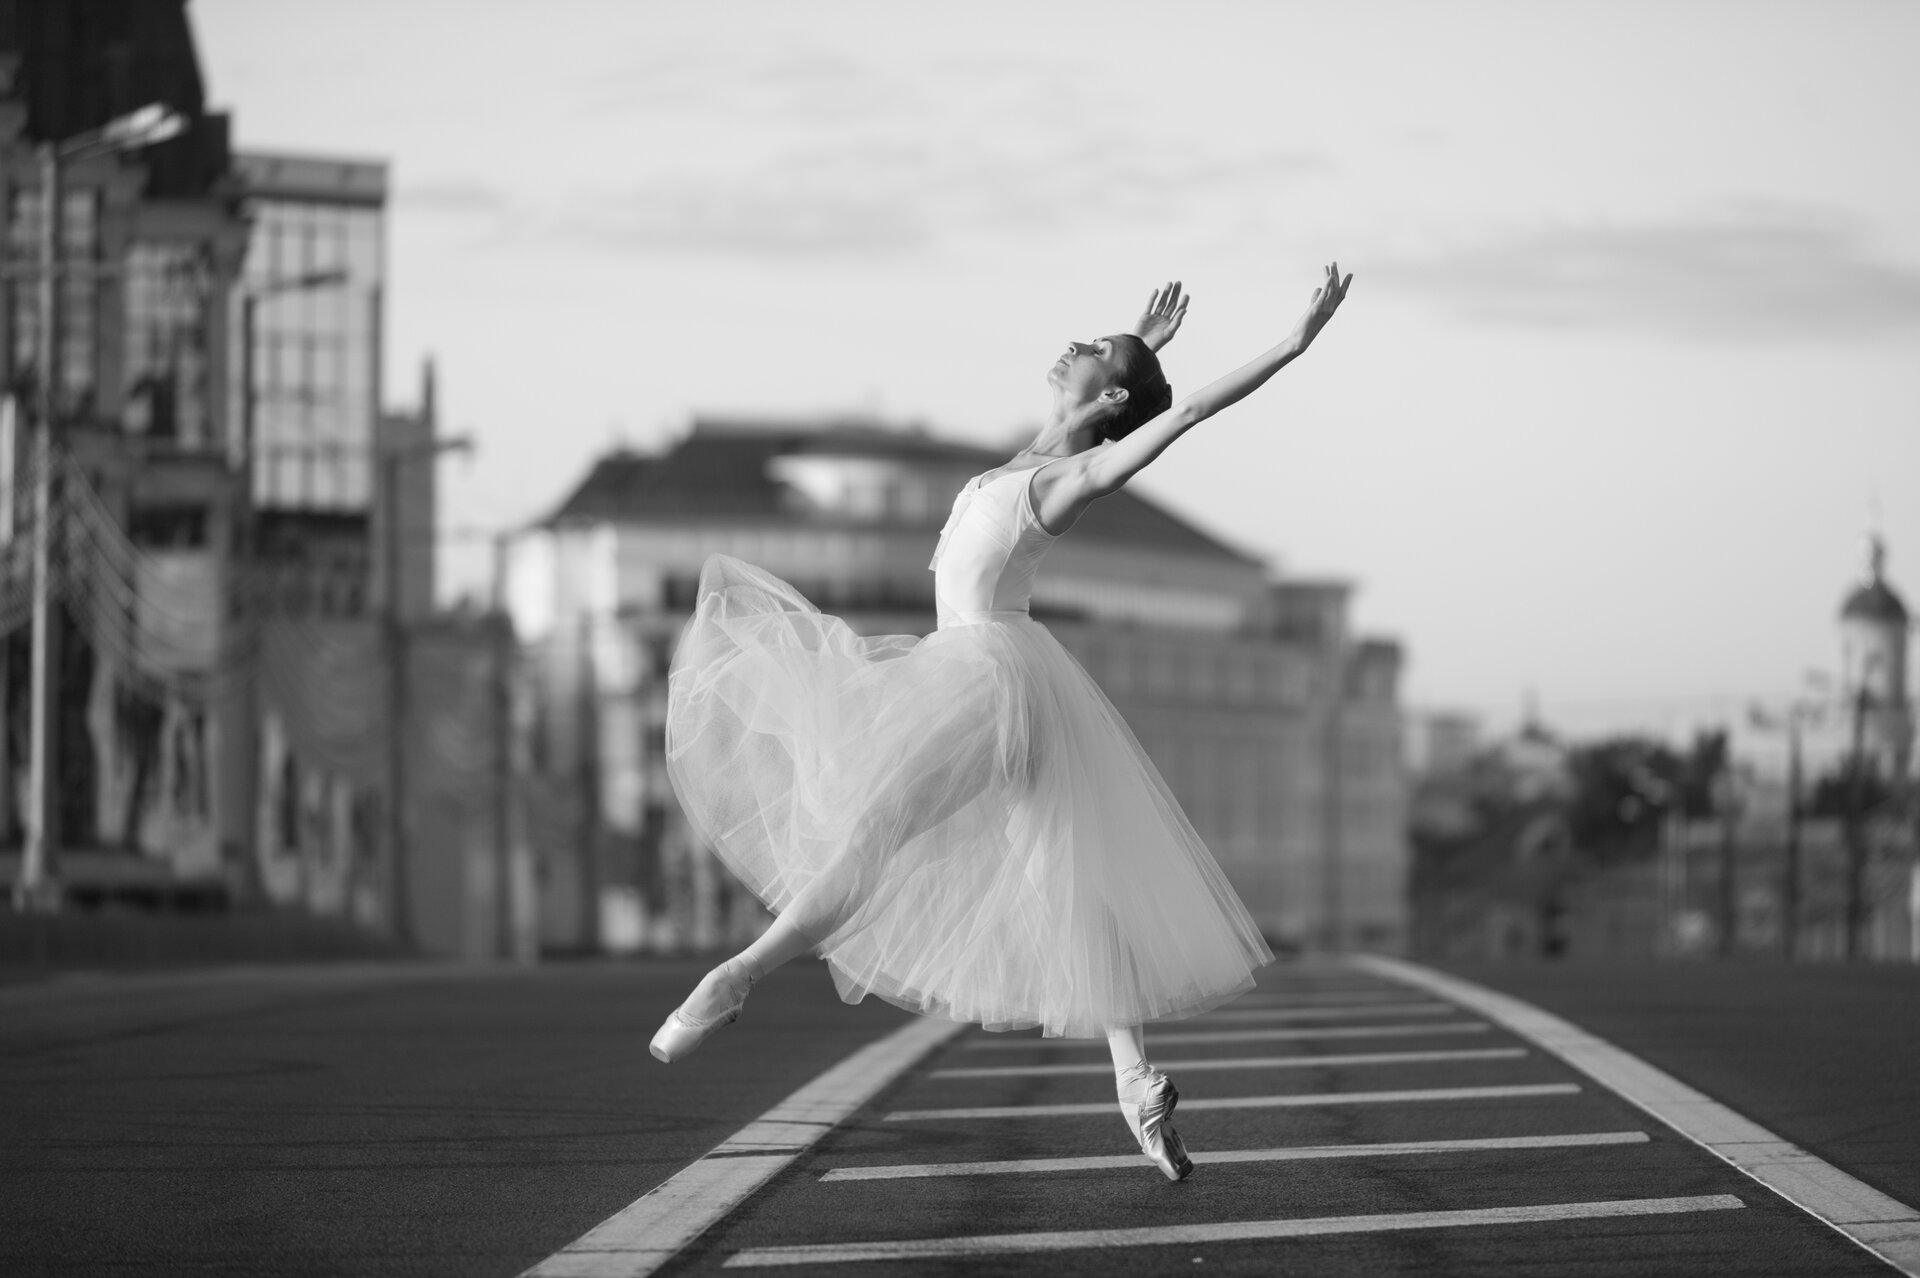 Ilustracja przedstawia baletnicę. Ubrana jest w typowy strój baletowy, czyli bluzkę na ramiączkach, tiulową spódnicę oraz baletki. Kobieta tańczy na ulicy, uchwycony został moment podskoku baletnicy. W tle widoczne są budynki. Fotografia jest czarno-biała.